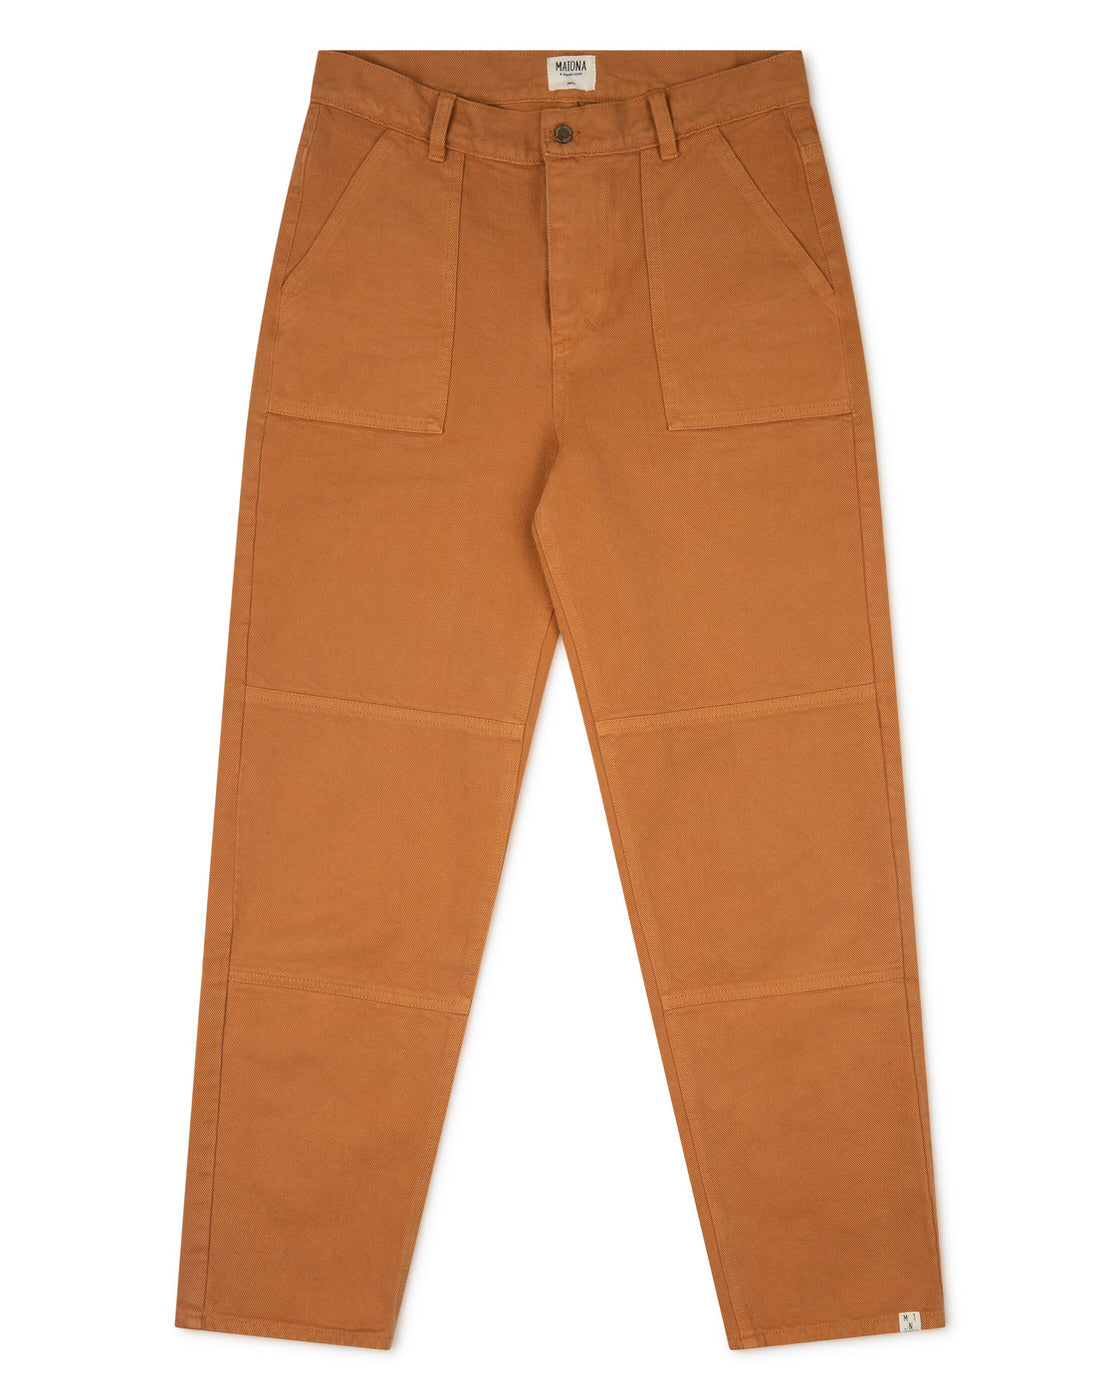 Pantalon marron cuivré en coton biologique par Matona